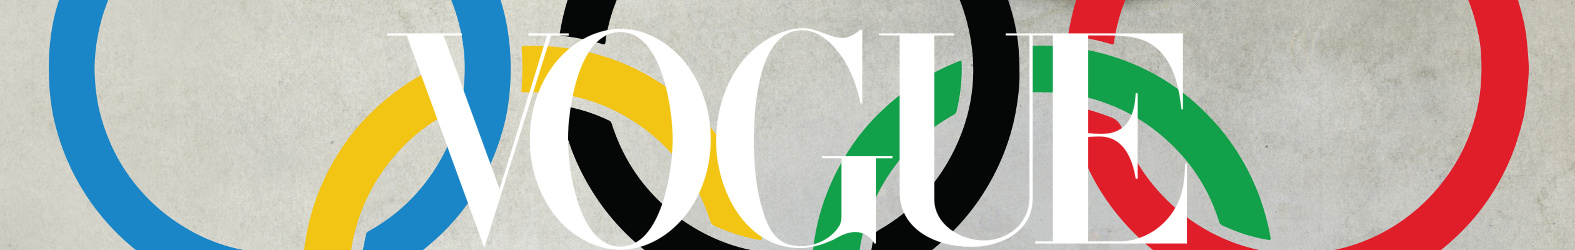 Vogue Olympics logo